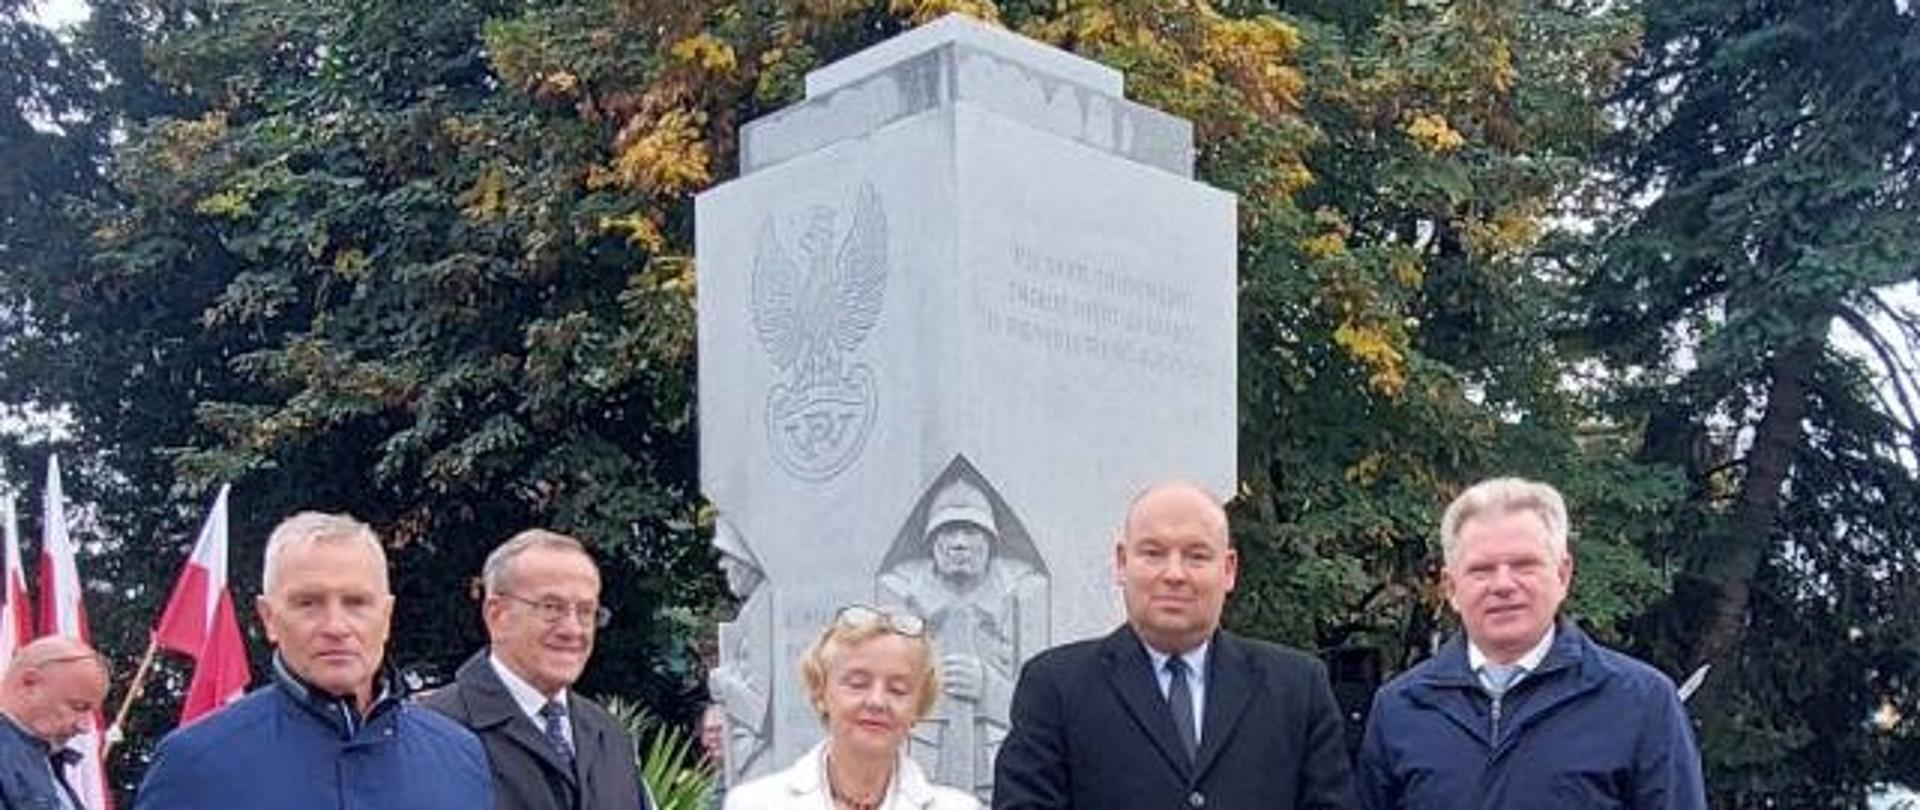 Uroczystość odsłonięcia pomnika Błękitnej Armii generała Hallera w Lesznie 